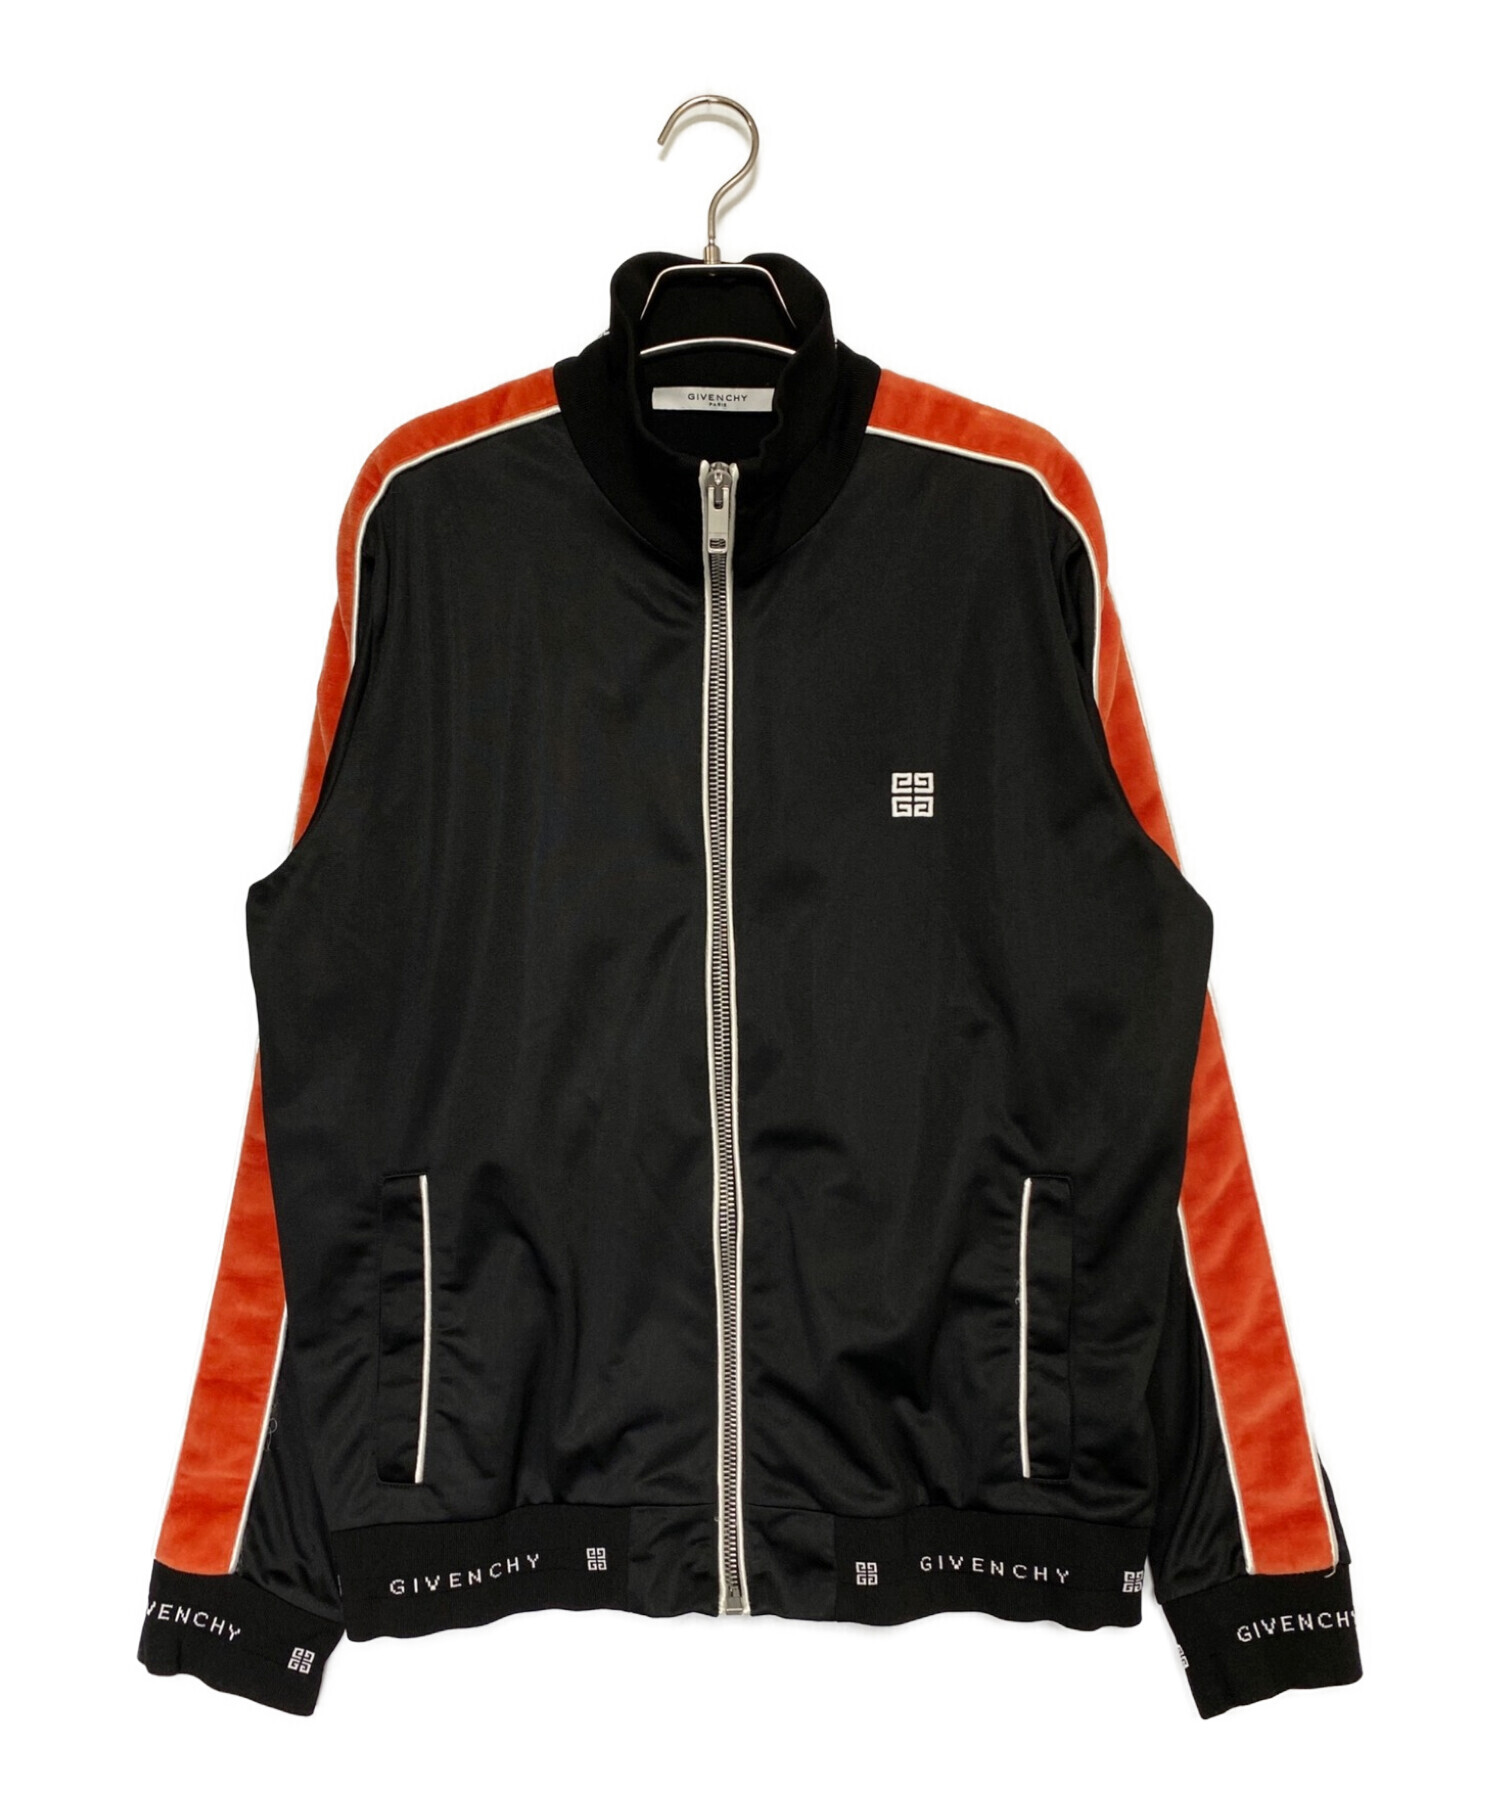 GIVENCHY (ジバンシィ) ベロアライントラックジャケット ブラック×オレンジ サイズ:XL